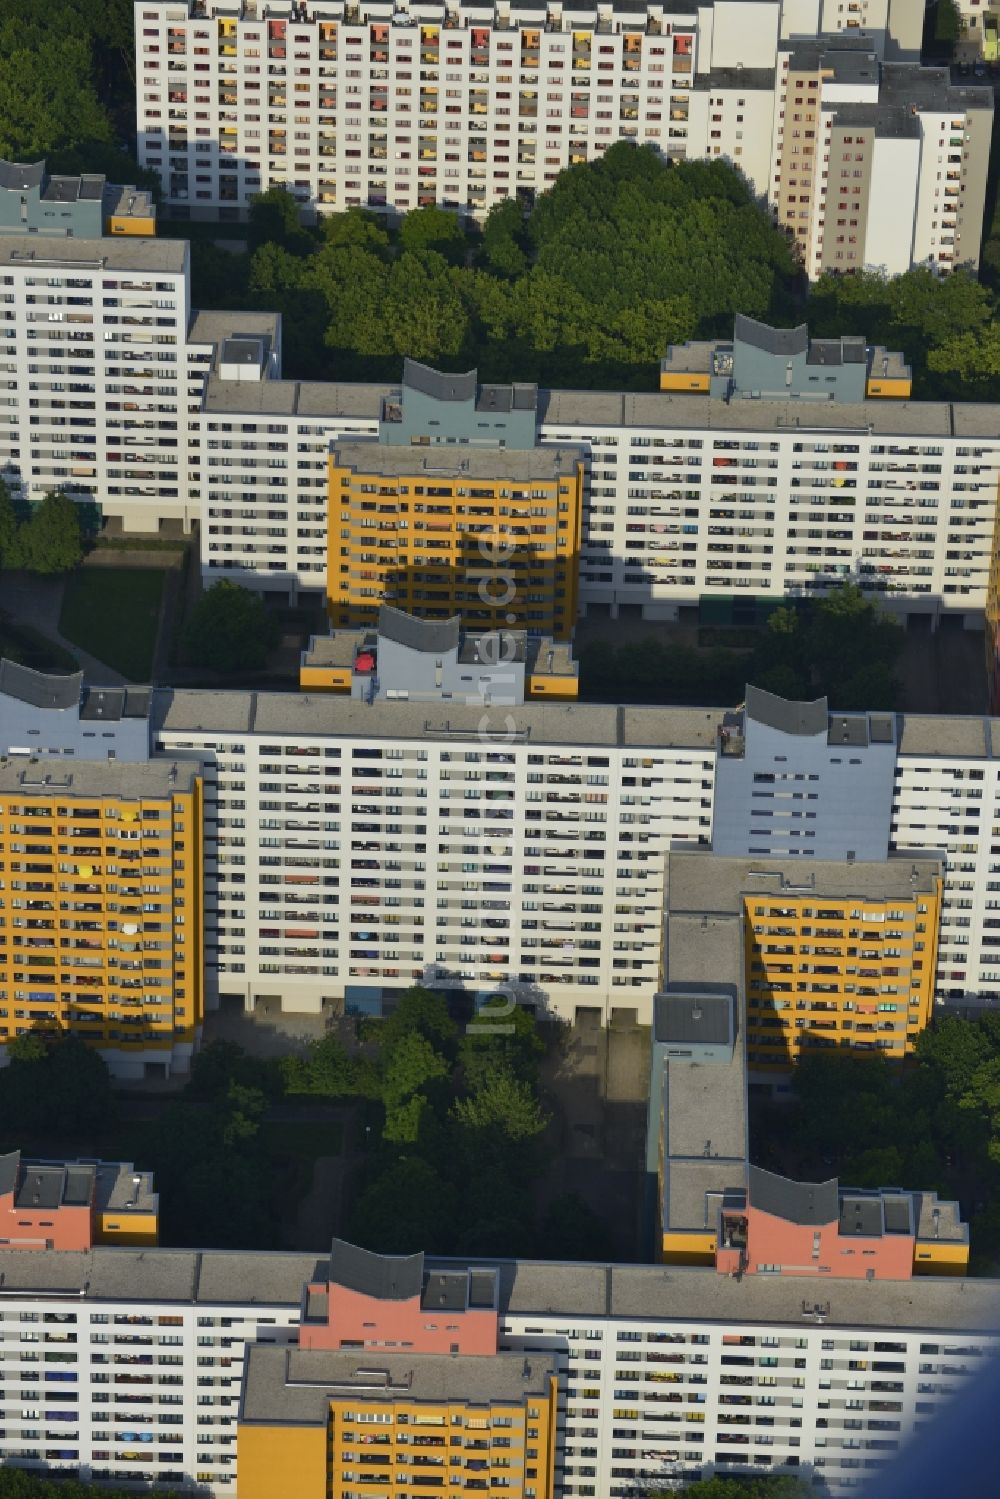 Luftbild Berlin Reinickendorf - Fassaden - sanierte Wohnsiedlung mit Plattenbauten - Hochhäusern im Märkischen Viertel in Tegel - Reinickendorf in Berlin